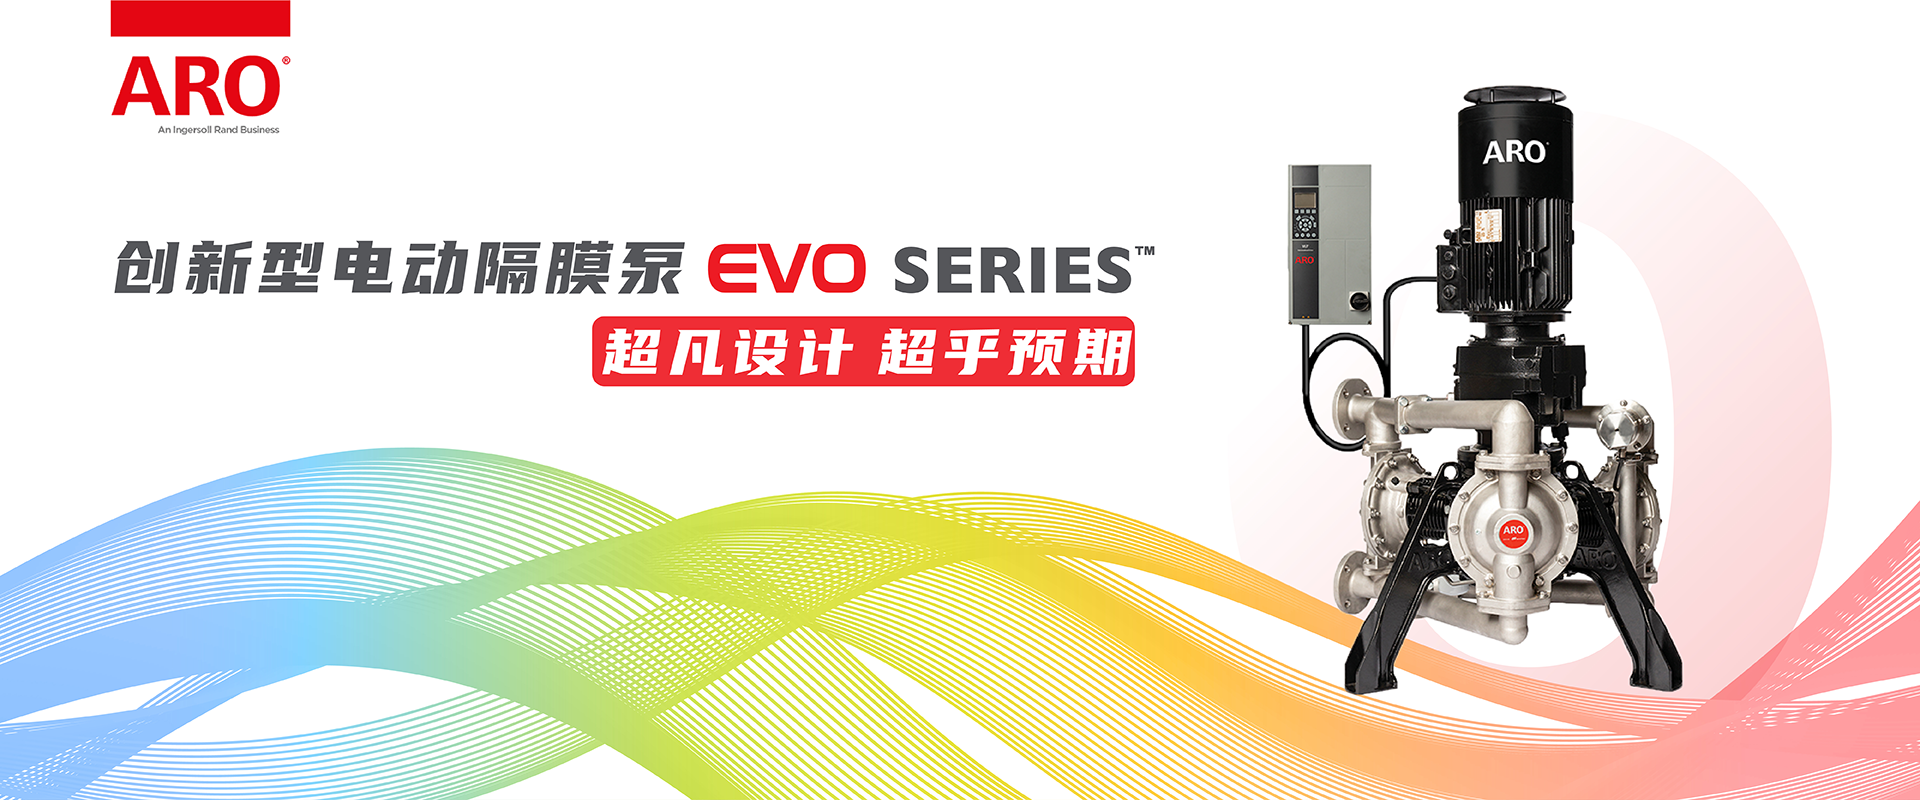 超凡设计 超乎预期—ARO创新型电动隔膜泵EVO系列正式发布